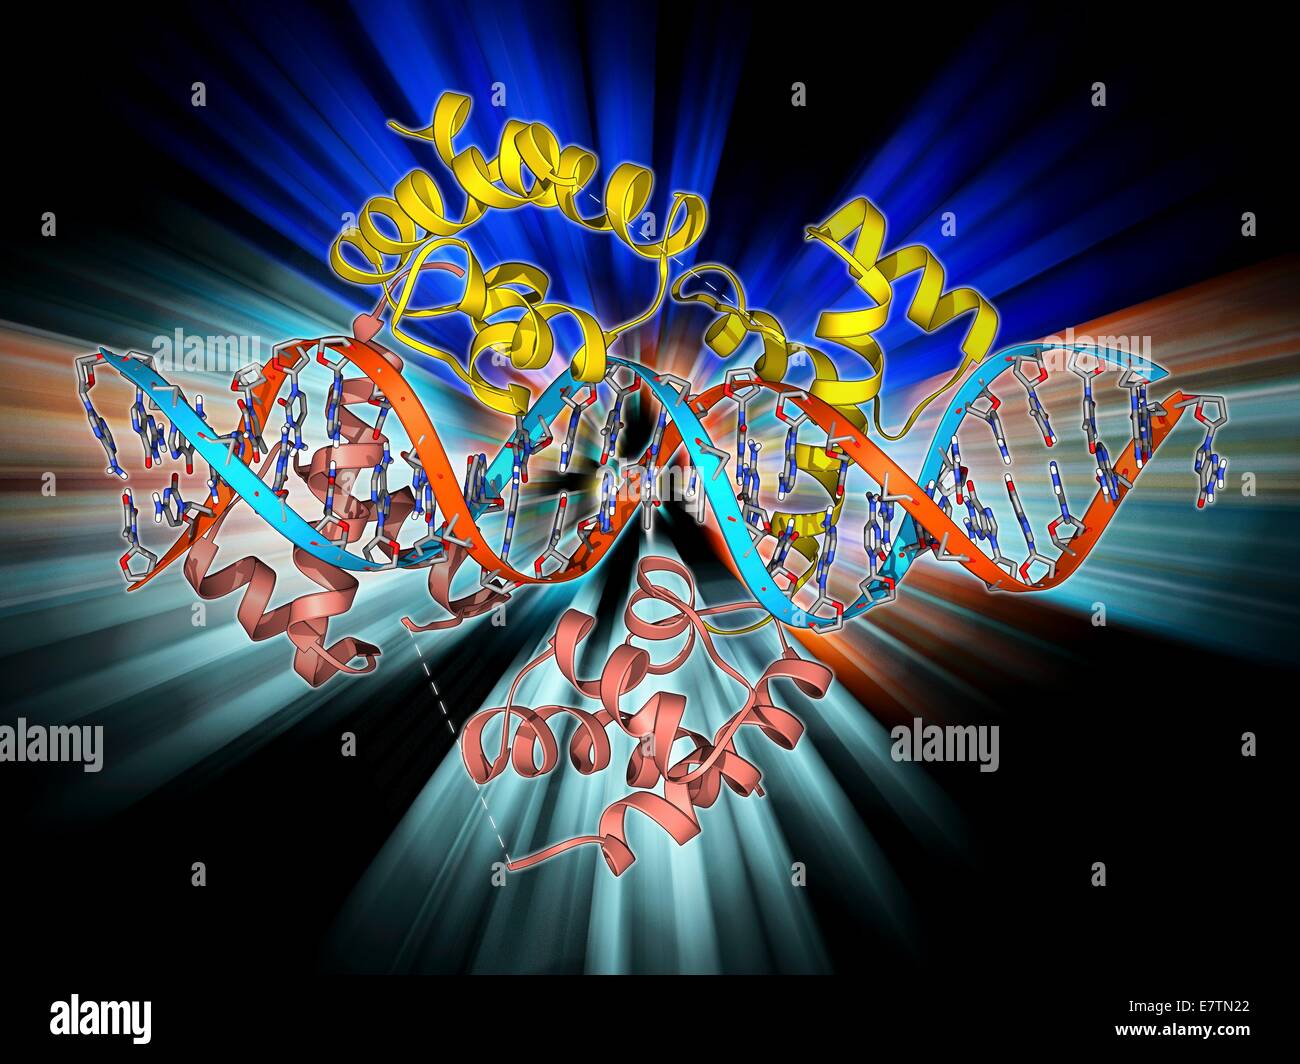 Grube-1 Transkriptionsfaktor an DNA gebunden. Molekülmodell zeigt Hypophyse-spezifische positive Transkriptionsfaktor 1 (Pit-1) (gelb und rosa) verpflichtet, einen Strang der DNA (Desoxyribonukleinsäure, Zentrum). Transkriptionsfaktoren sind Proteine, die an binden Stockfoto